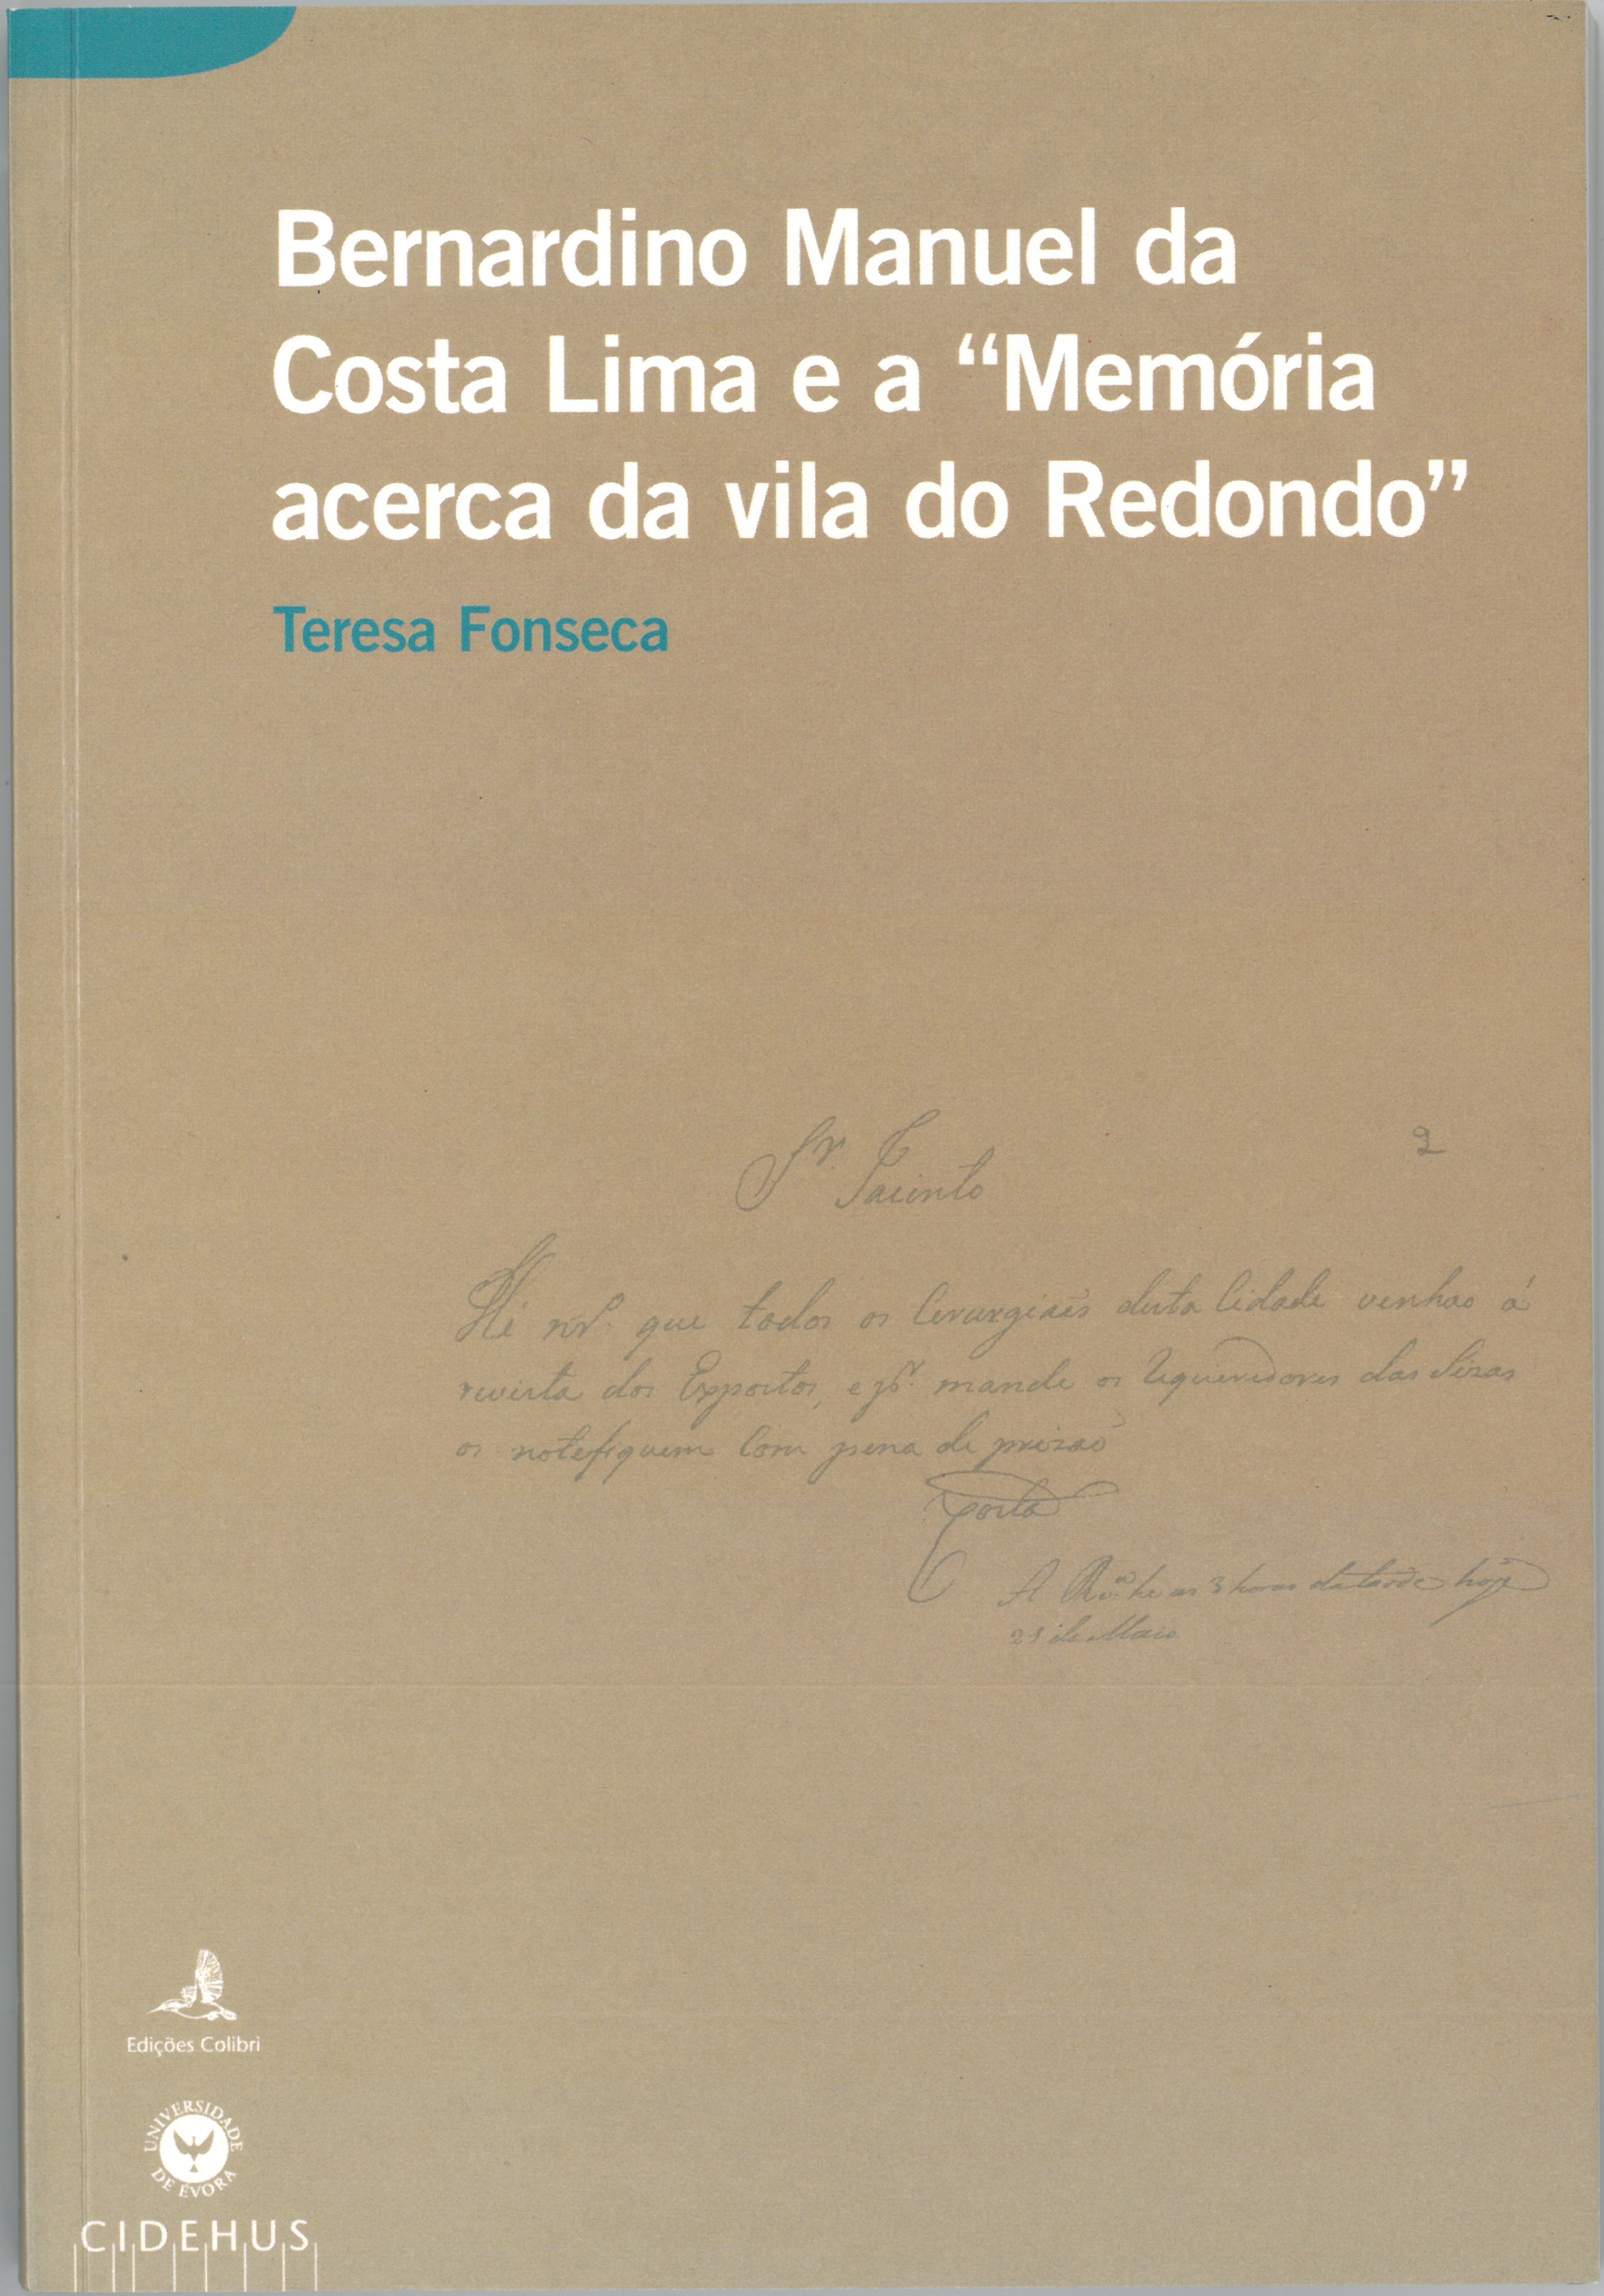 Bernardino Manuel da Costa Lima e a Memória acerca da vila de Redondo.jpg